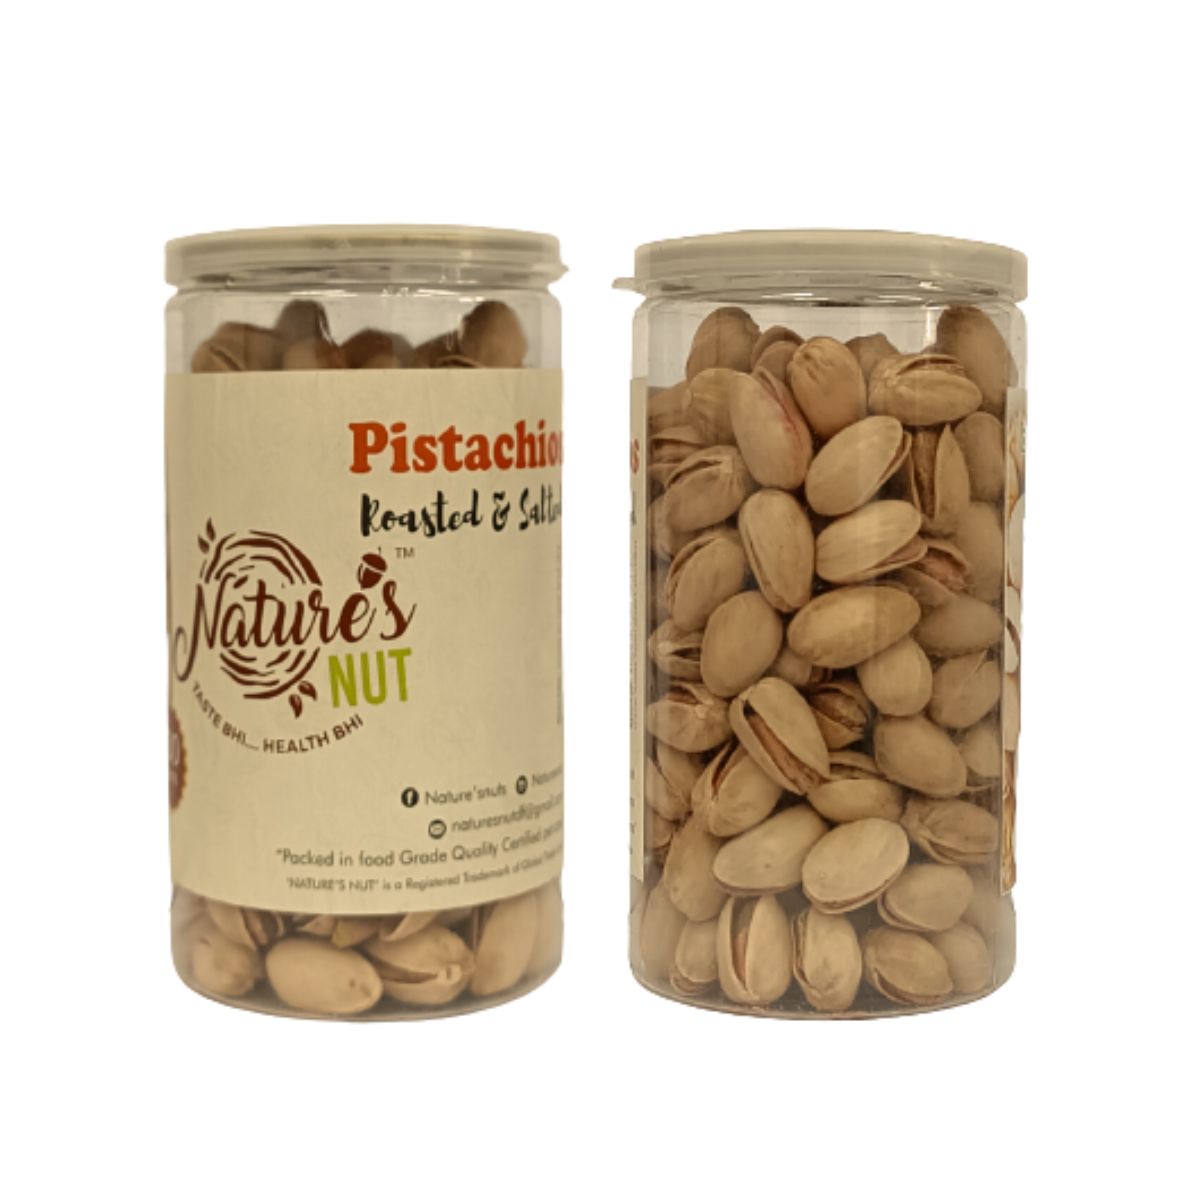 Nature's Nut - Pistachios - 200g